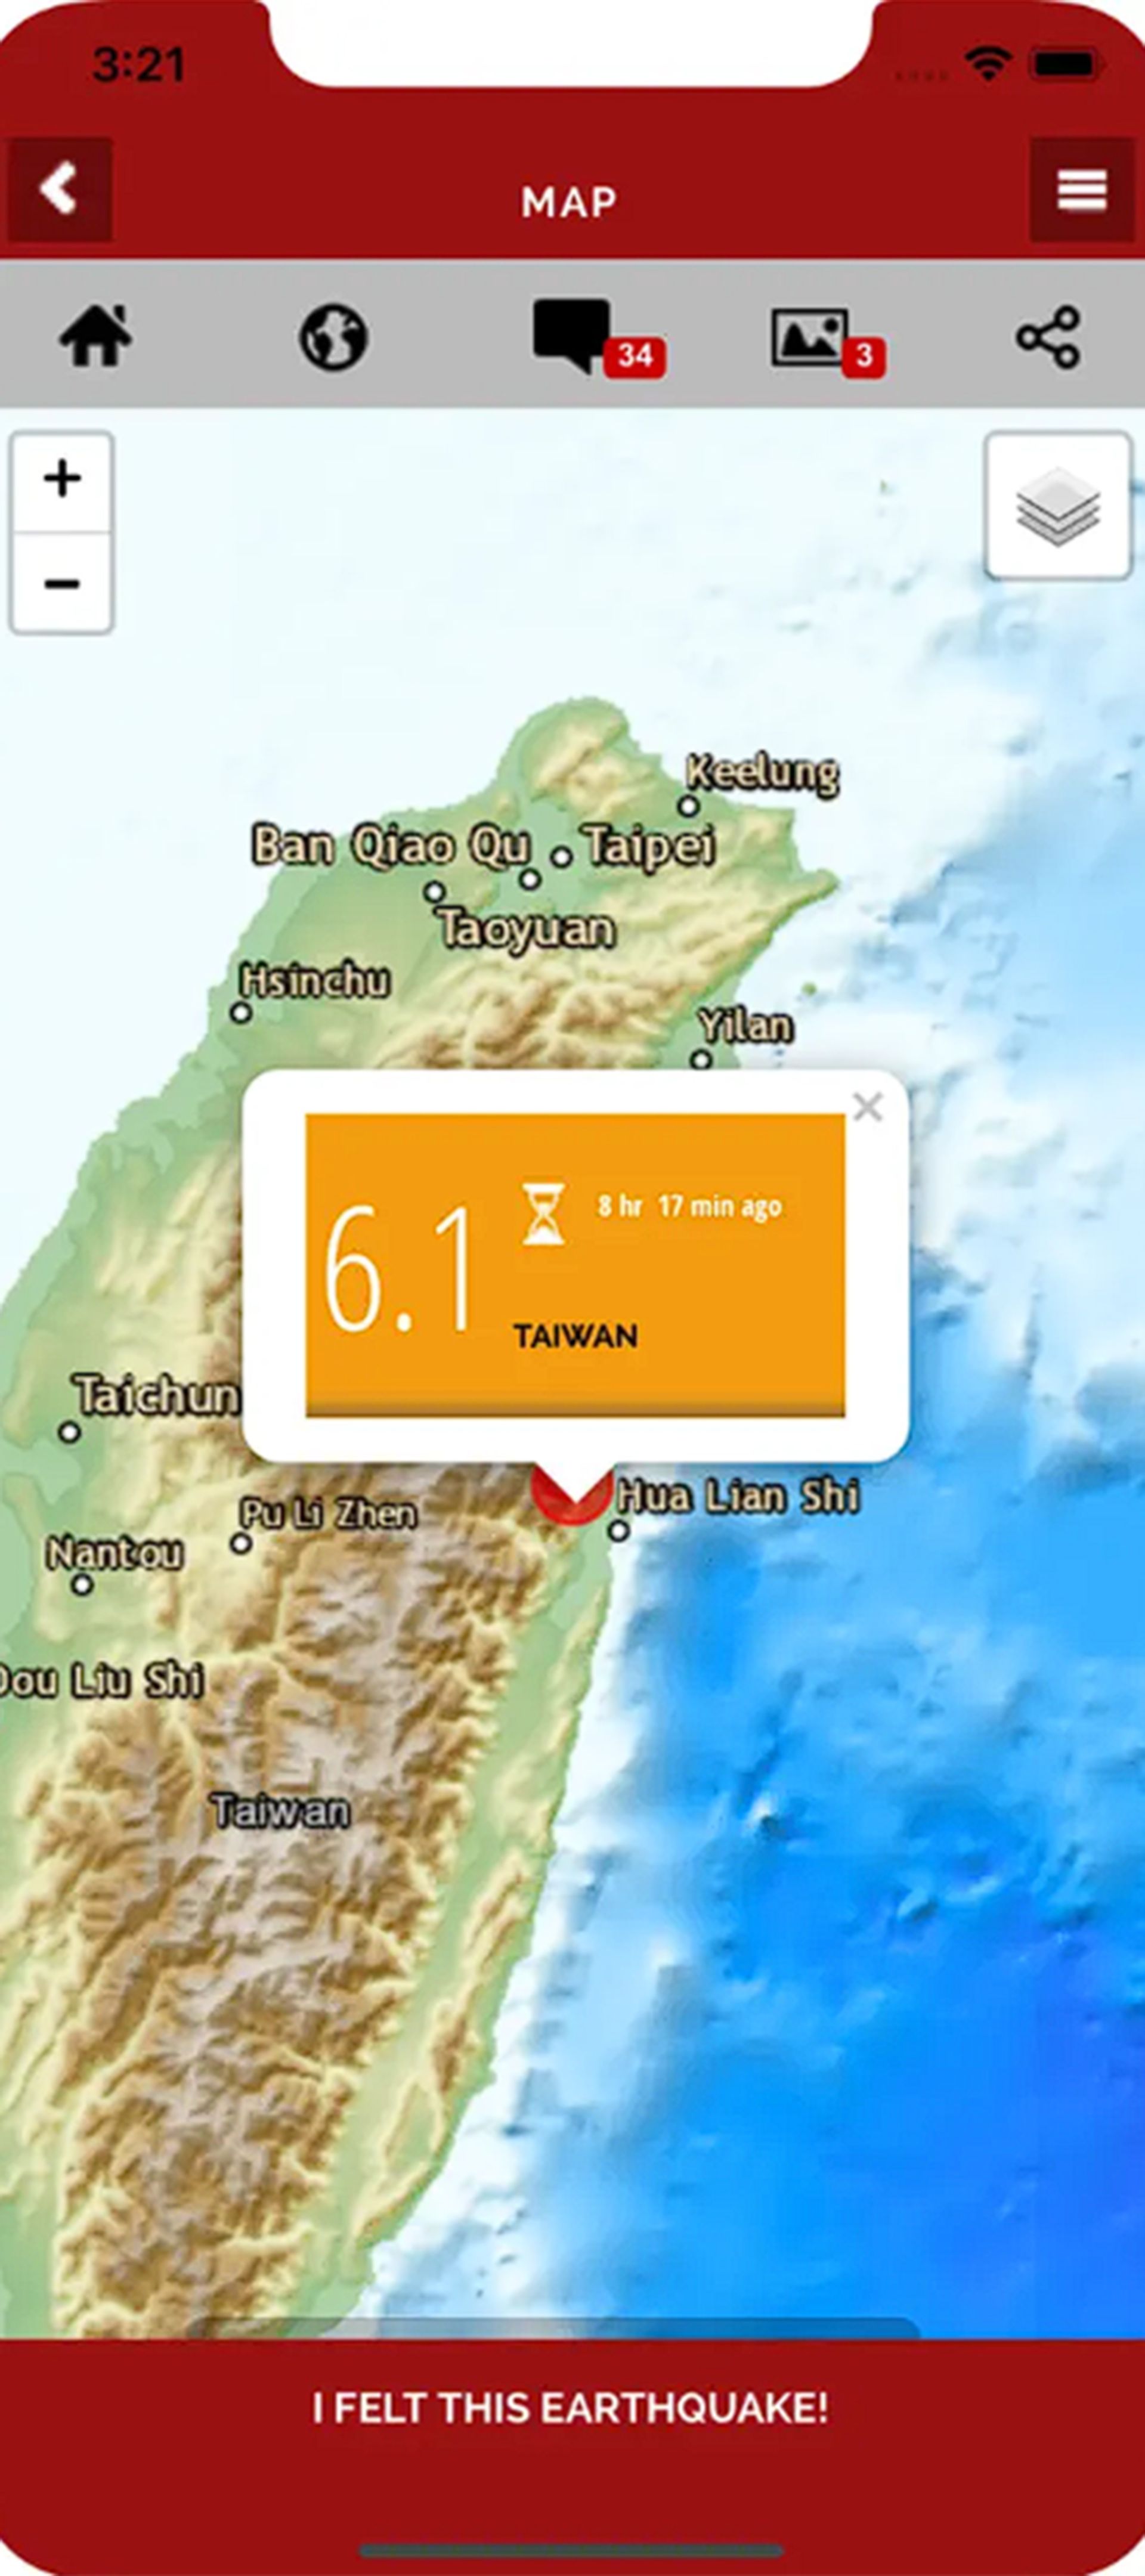 قسمتی از نقشه زمین و اطلاعات مربوط به زلزله ای در آن بخش